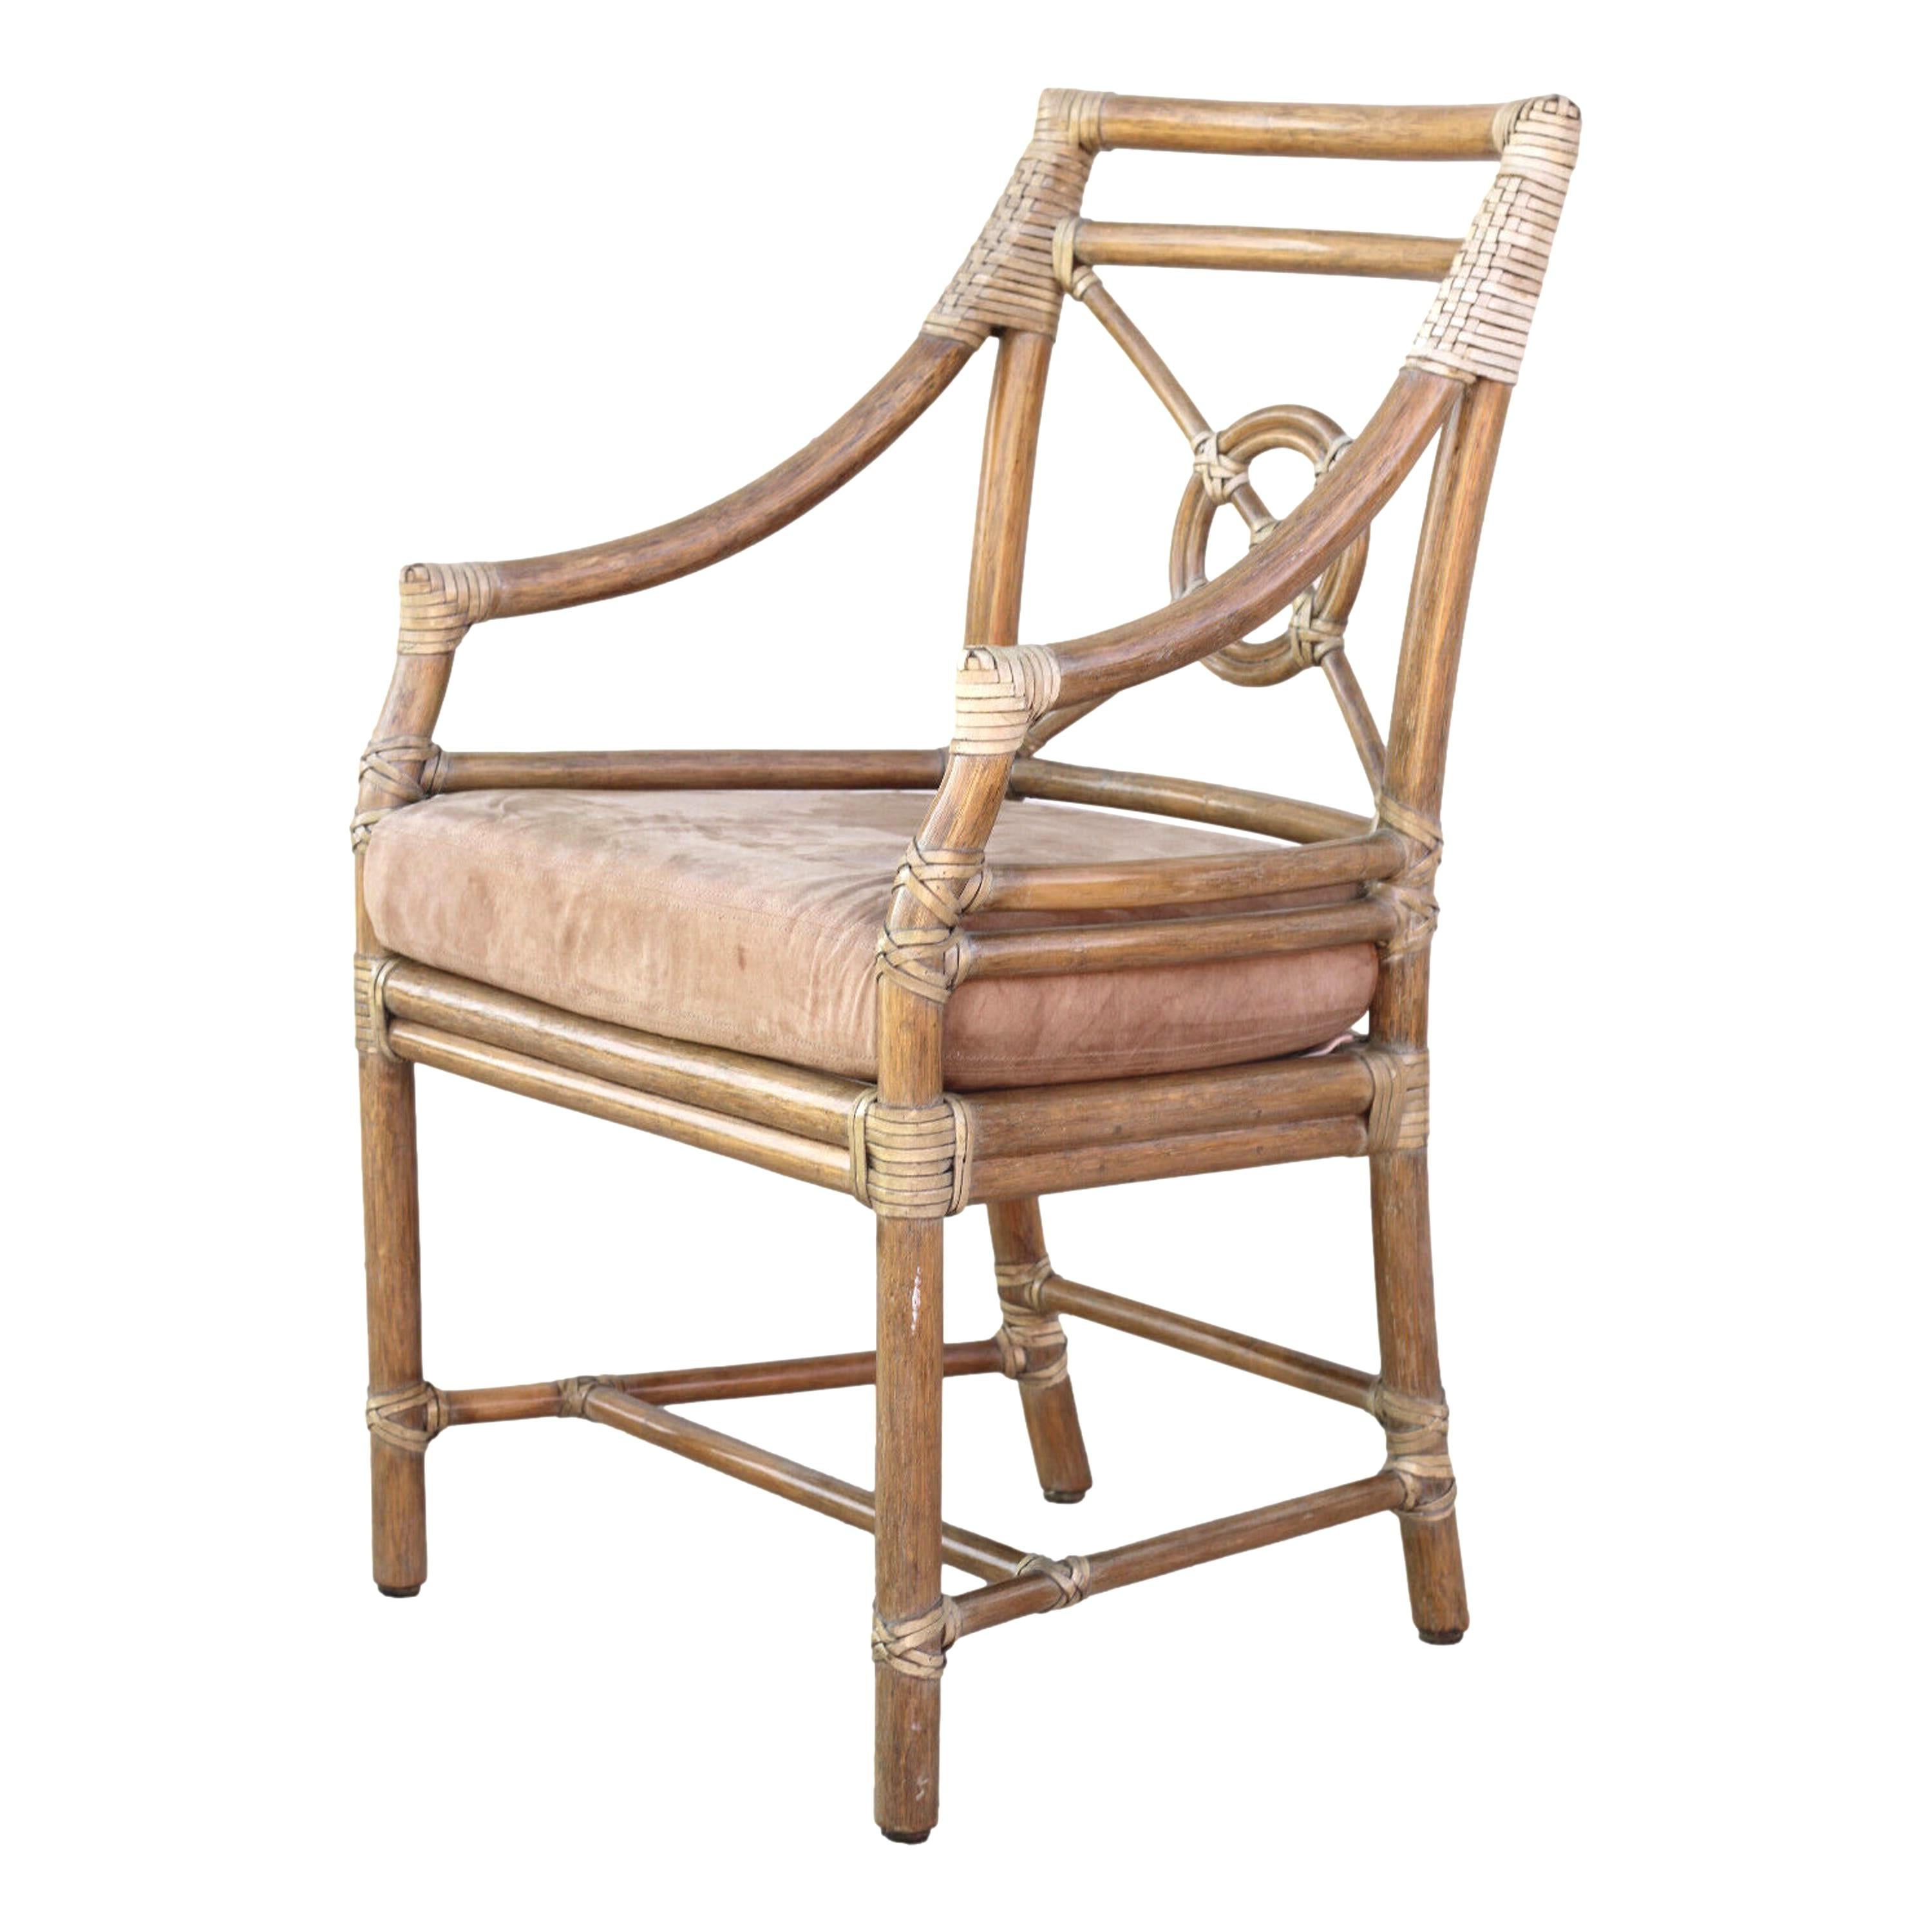 Paire de fauteuils ou de chaises de salle à manger en rotin conçus par l'innovatrice Elinor McGuire dans le style moderne organique californien. Ces chaises impeccablement fabriquées présentent un dossier ouvert en rotin, qui encadre le design